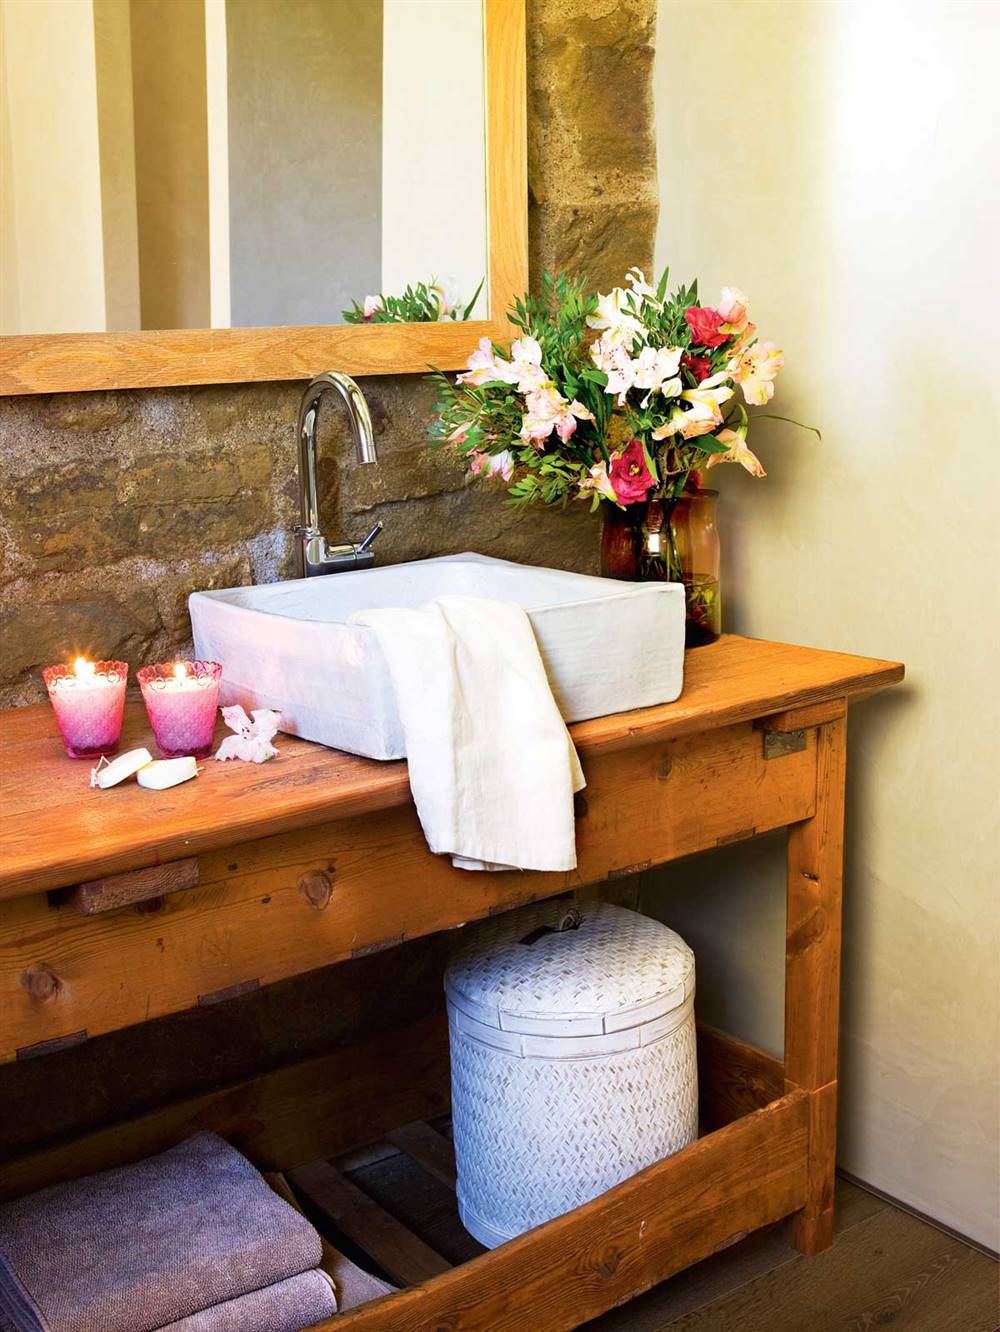 Baño rústico con mueble bajolavabo de madera, velas, espejo, pared de piedra y flores- 391516